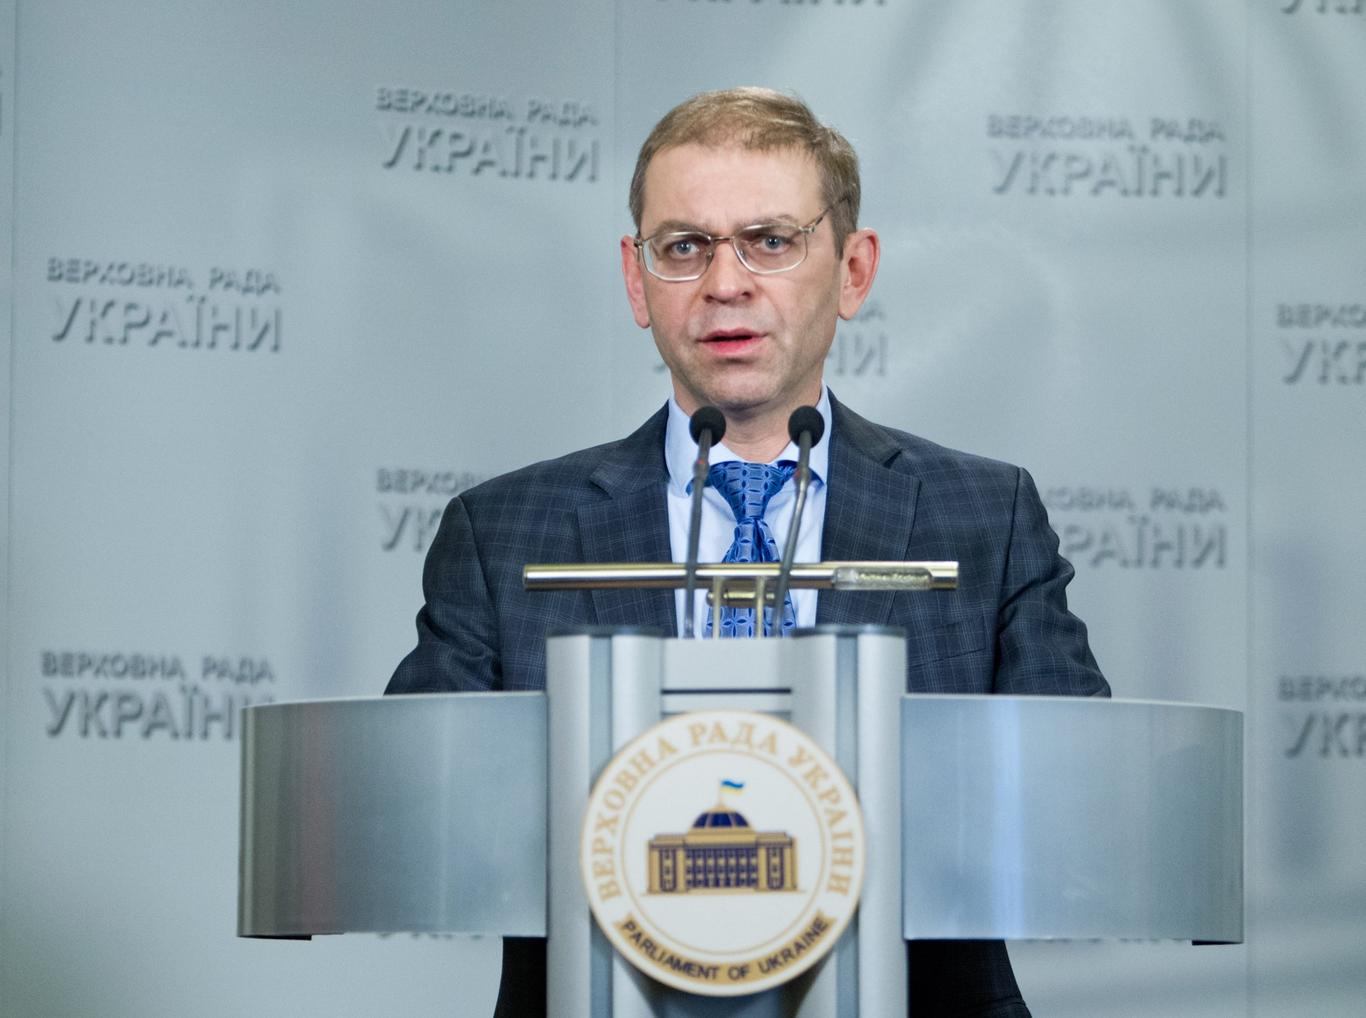 Сергій Пашинський готує законопроект про легалізацію короткоствольної зброї